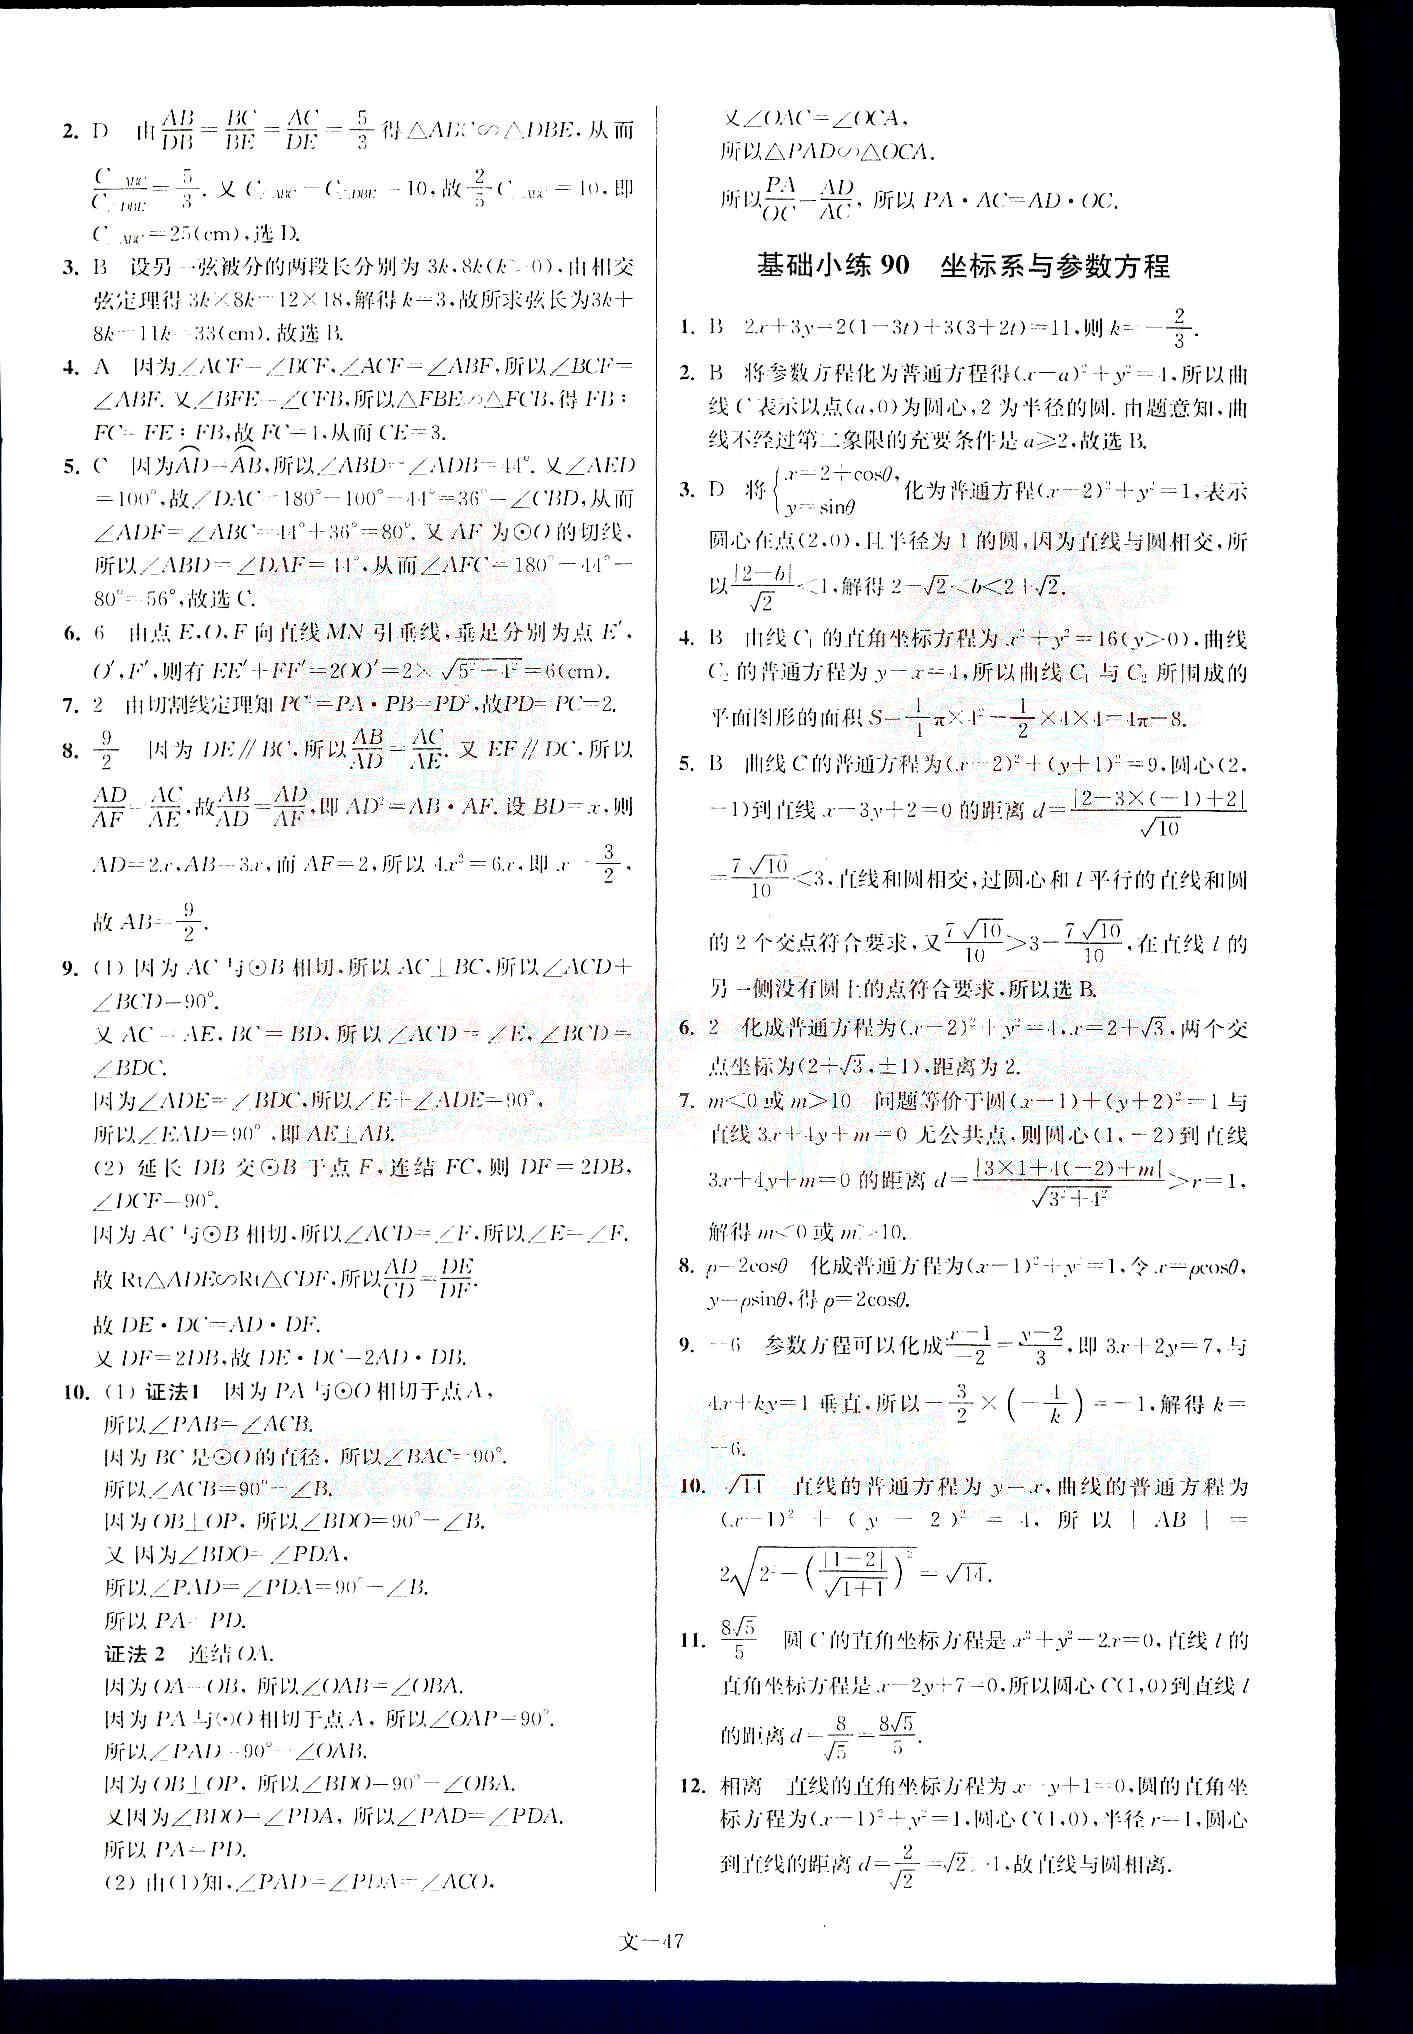 小题狂做-高考数学-文科-最基础篇南京大学出版社 第10部分 [2]